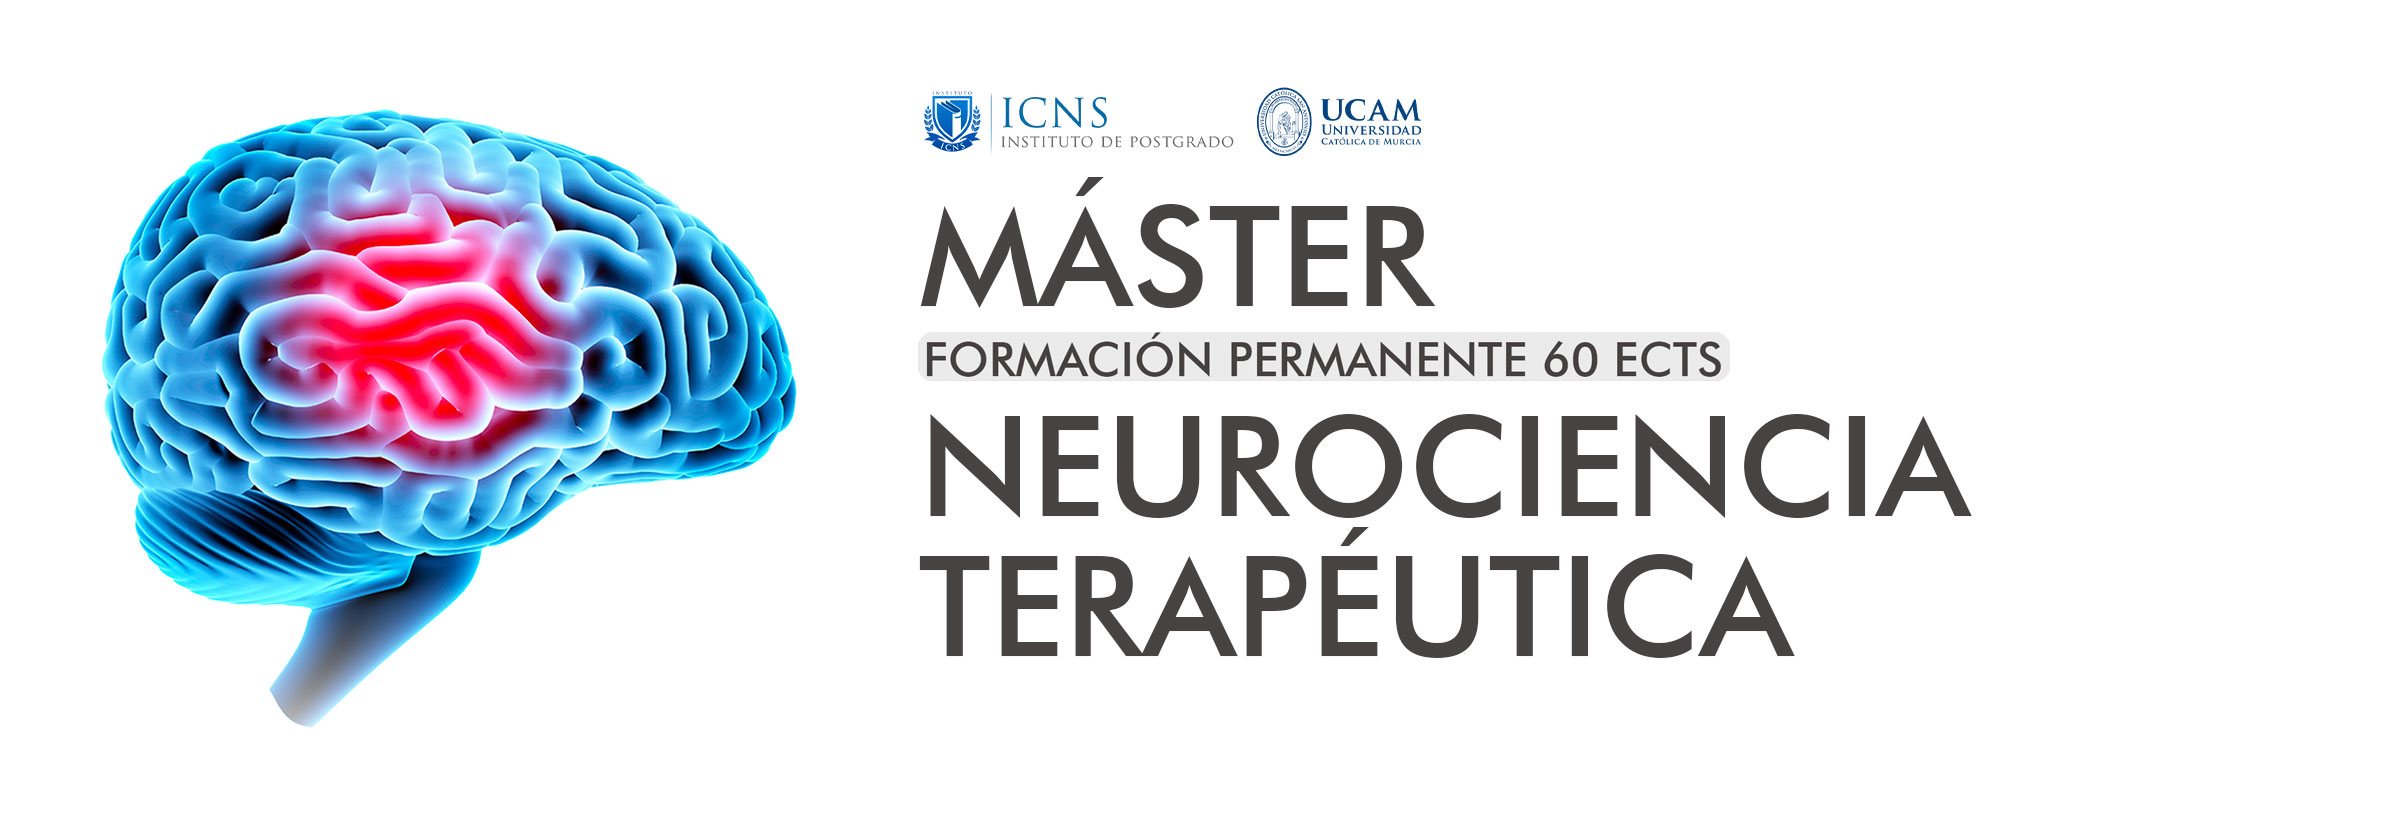 Máster en Neurociencia Terapéutica (NEURO9)